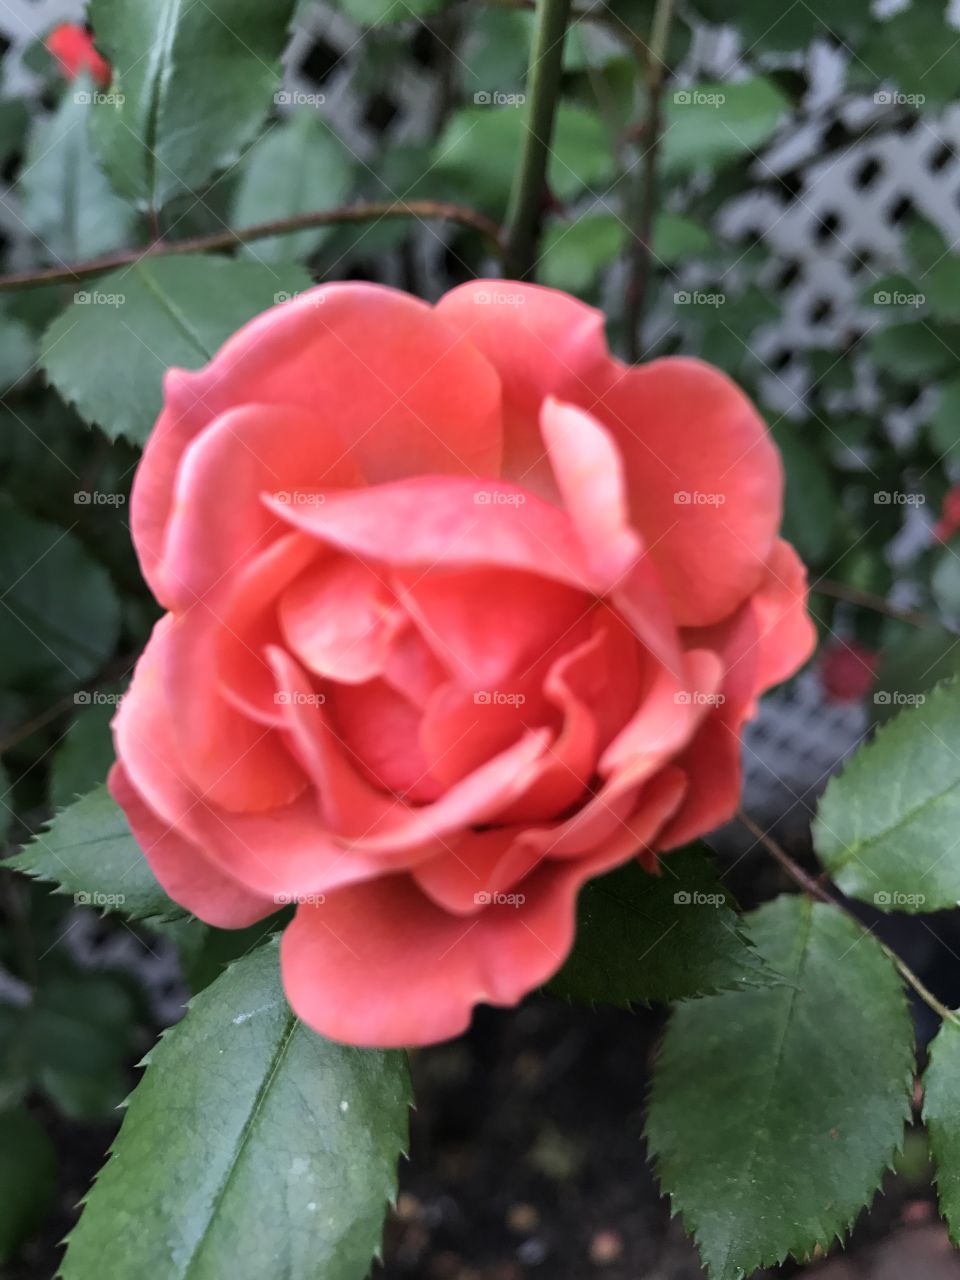 Orangey rose